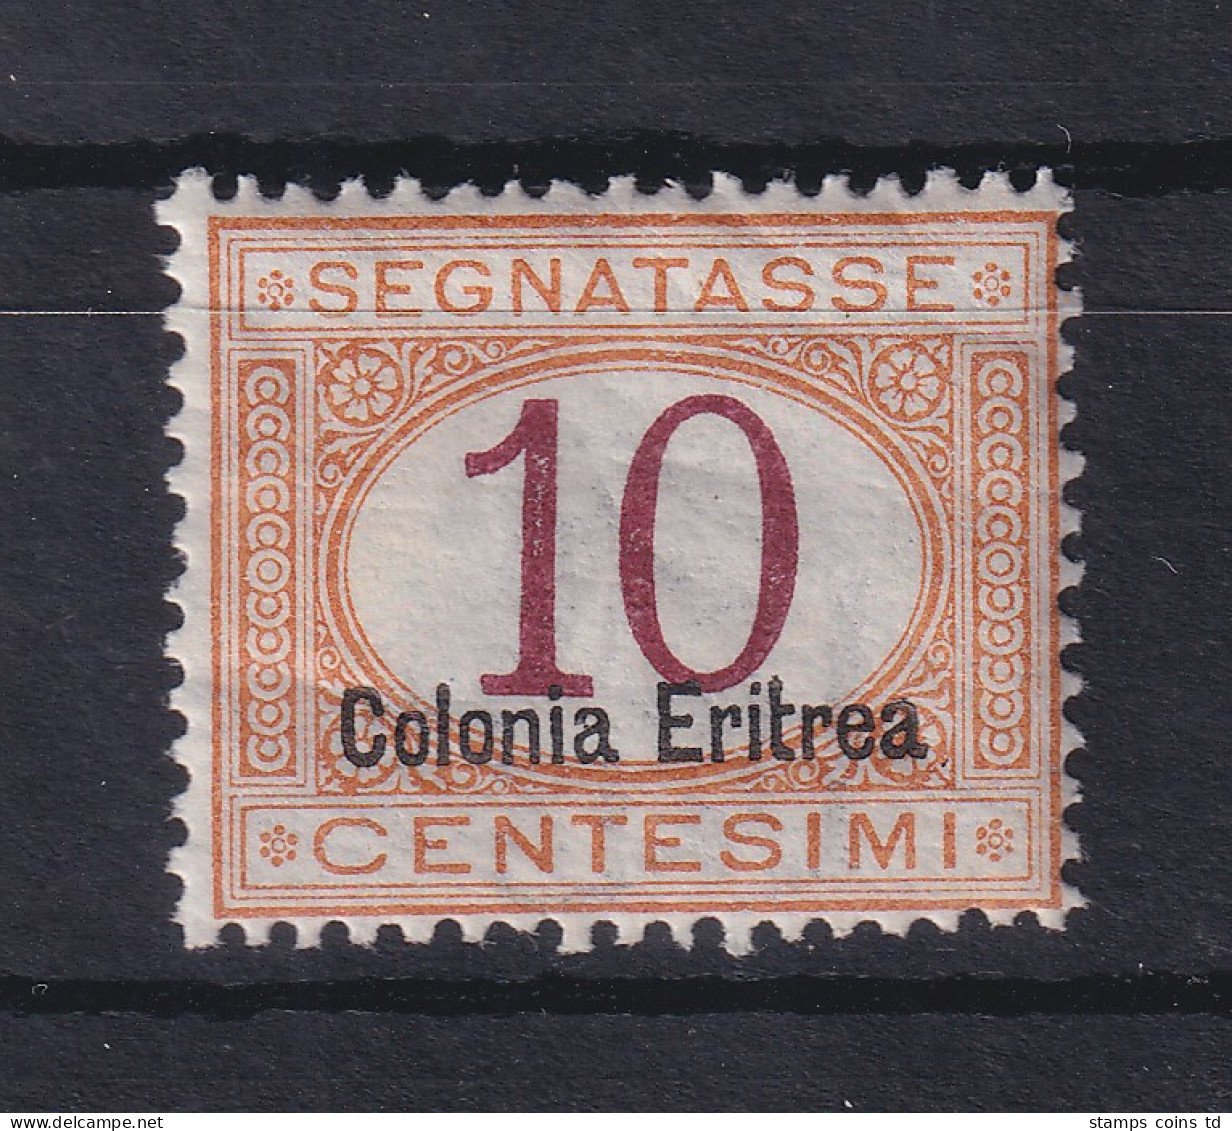 Italienisch-Eritrea 1903 Portomarke Aufdruck Unten 10 C. Mi.-Nr. 2 II Ungebr. * - Eritrea